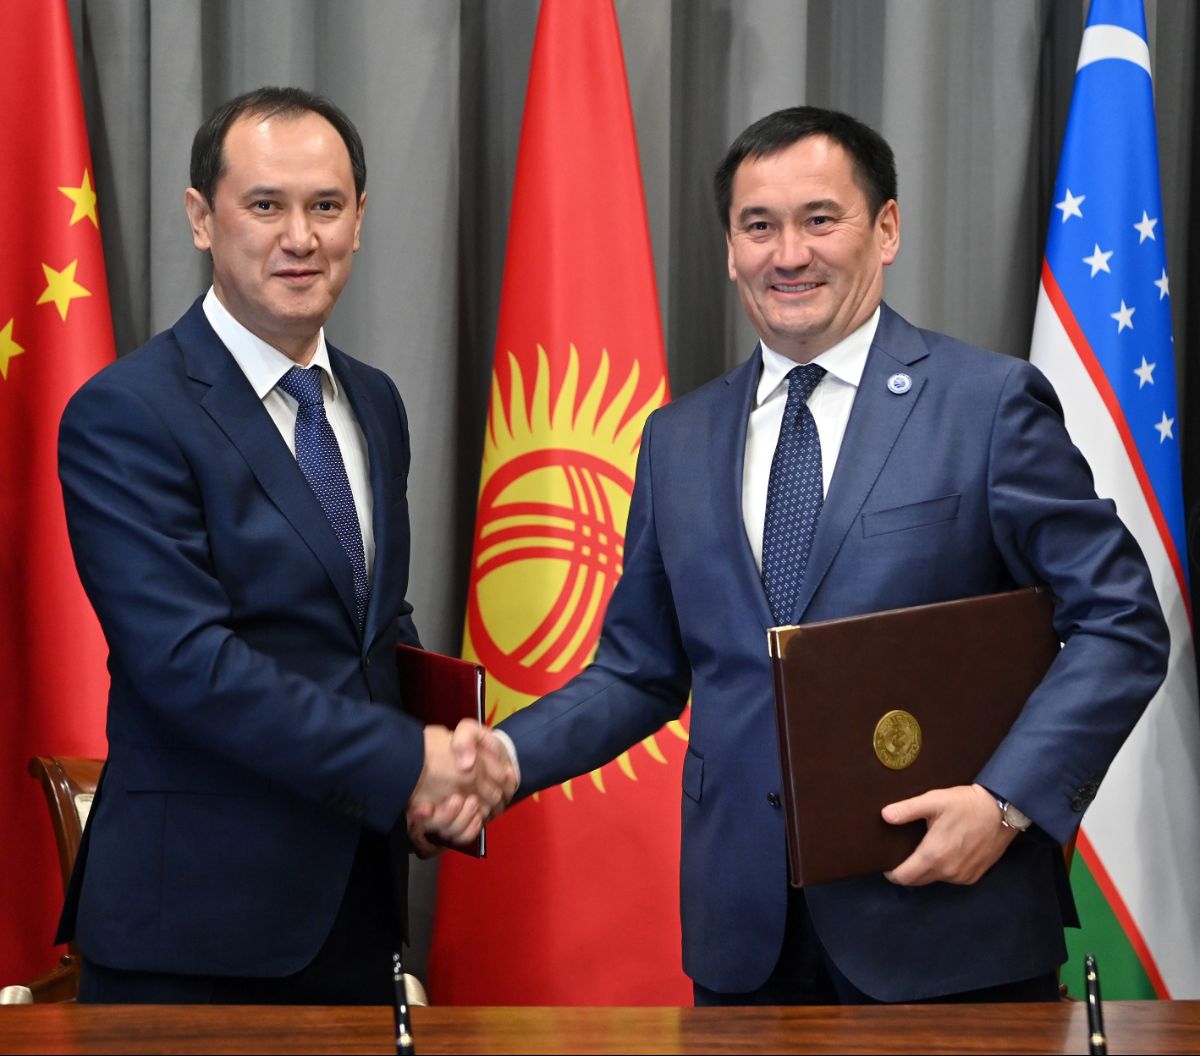 В Самарканде подписано Соглашение о сотрудничестве по проекту строительства железной дороги «Китай-Кыргызстан-Узбекистан» на участке на территории КР